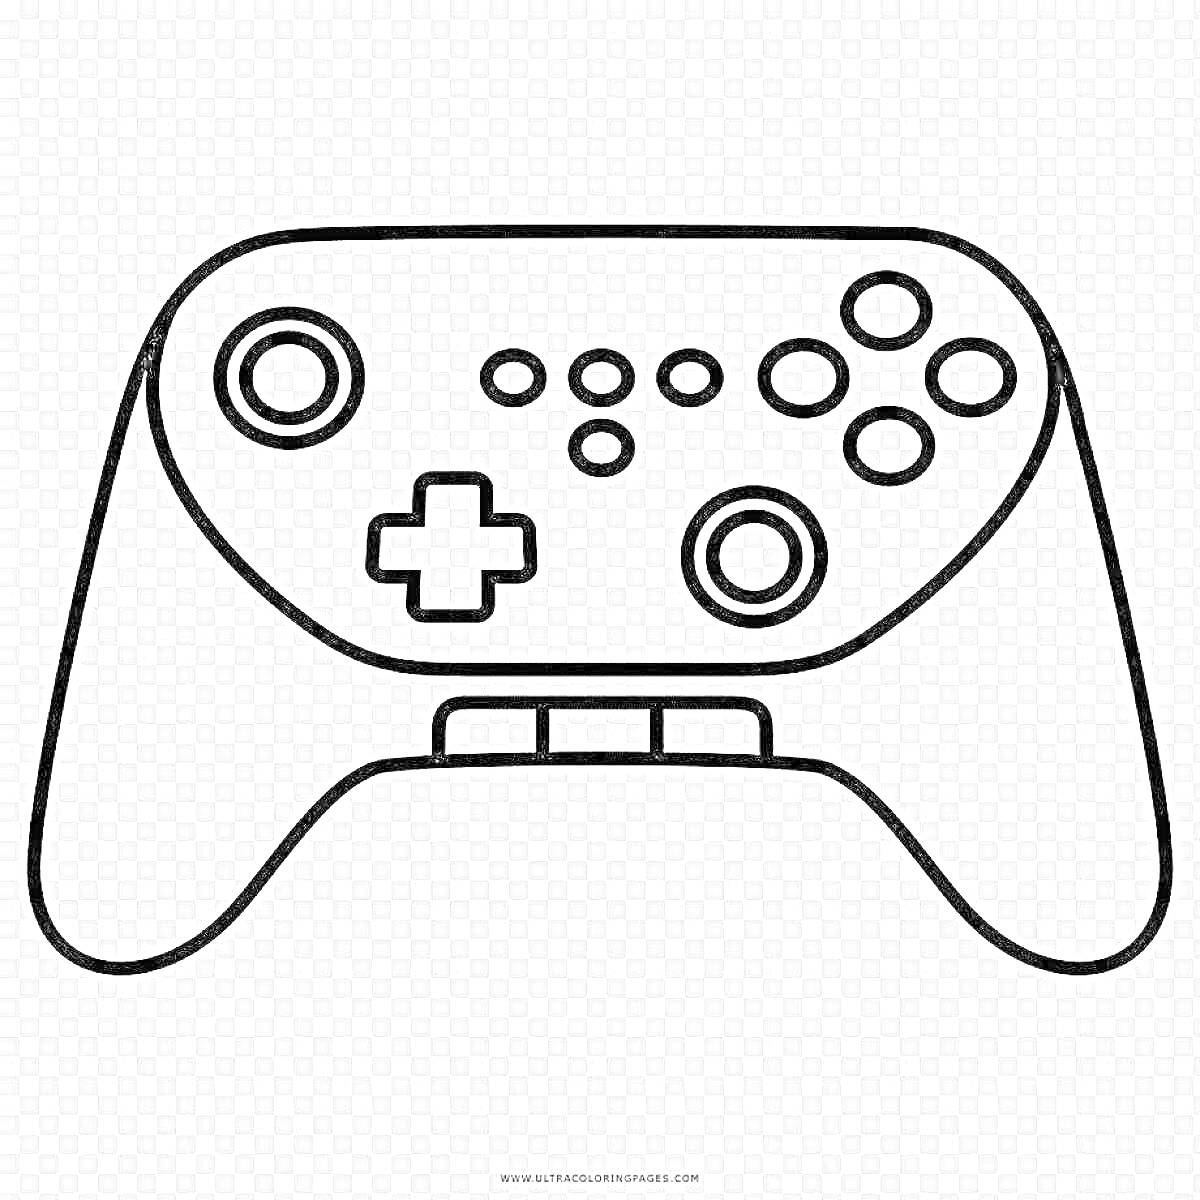 Раскраска Контроллер с кнопками и джойстиками для игровой приставки